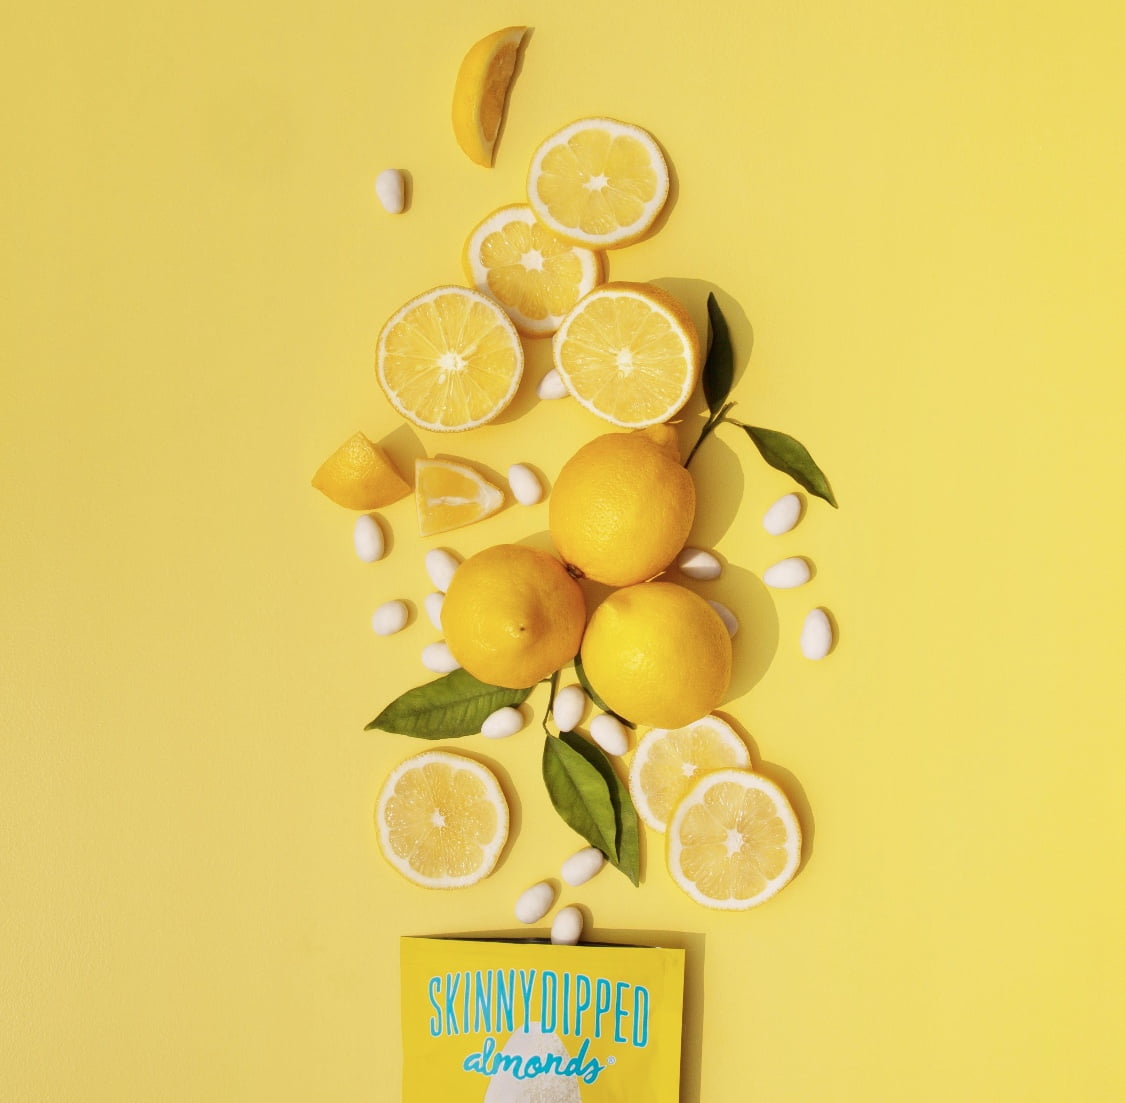 SkinnyDipped, Lemon Bliss Almonds, 3.5 oz - Walmart.com